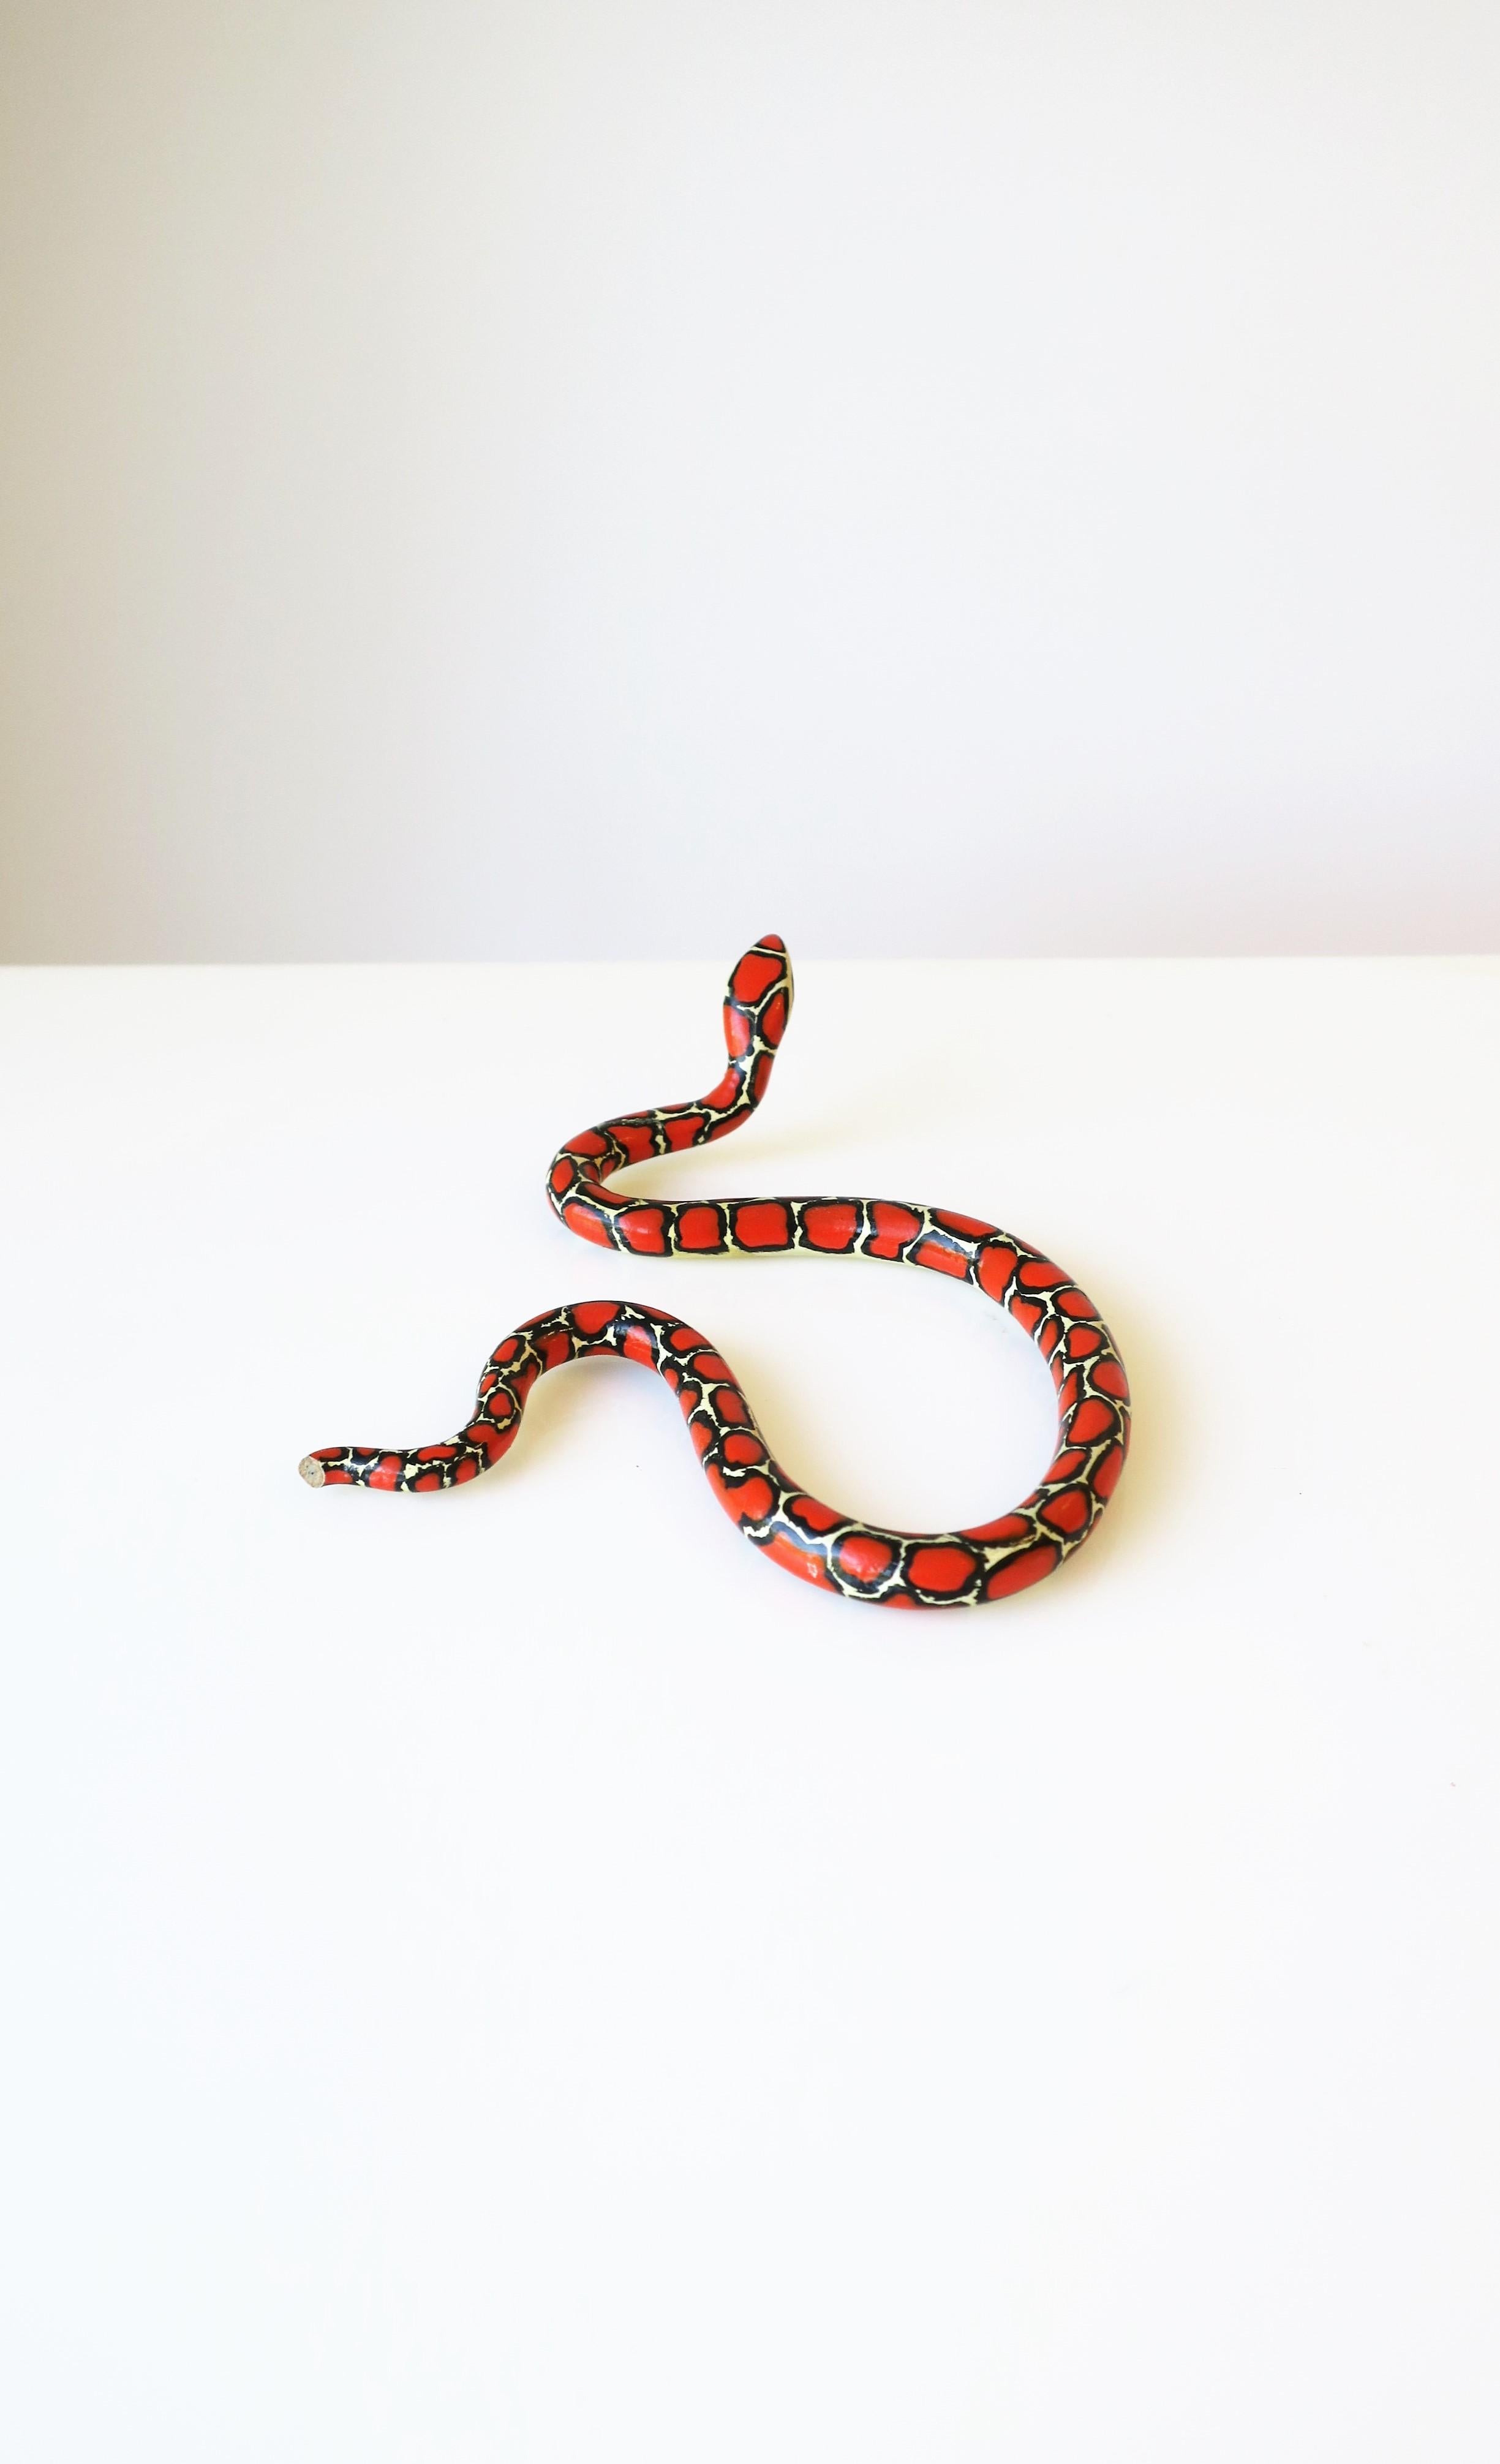 Red Black and White Terracotta Ceramic Snake 9